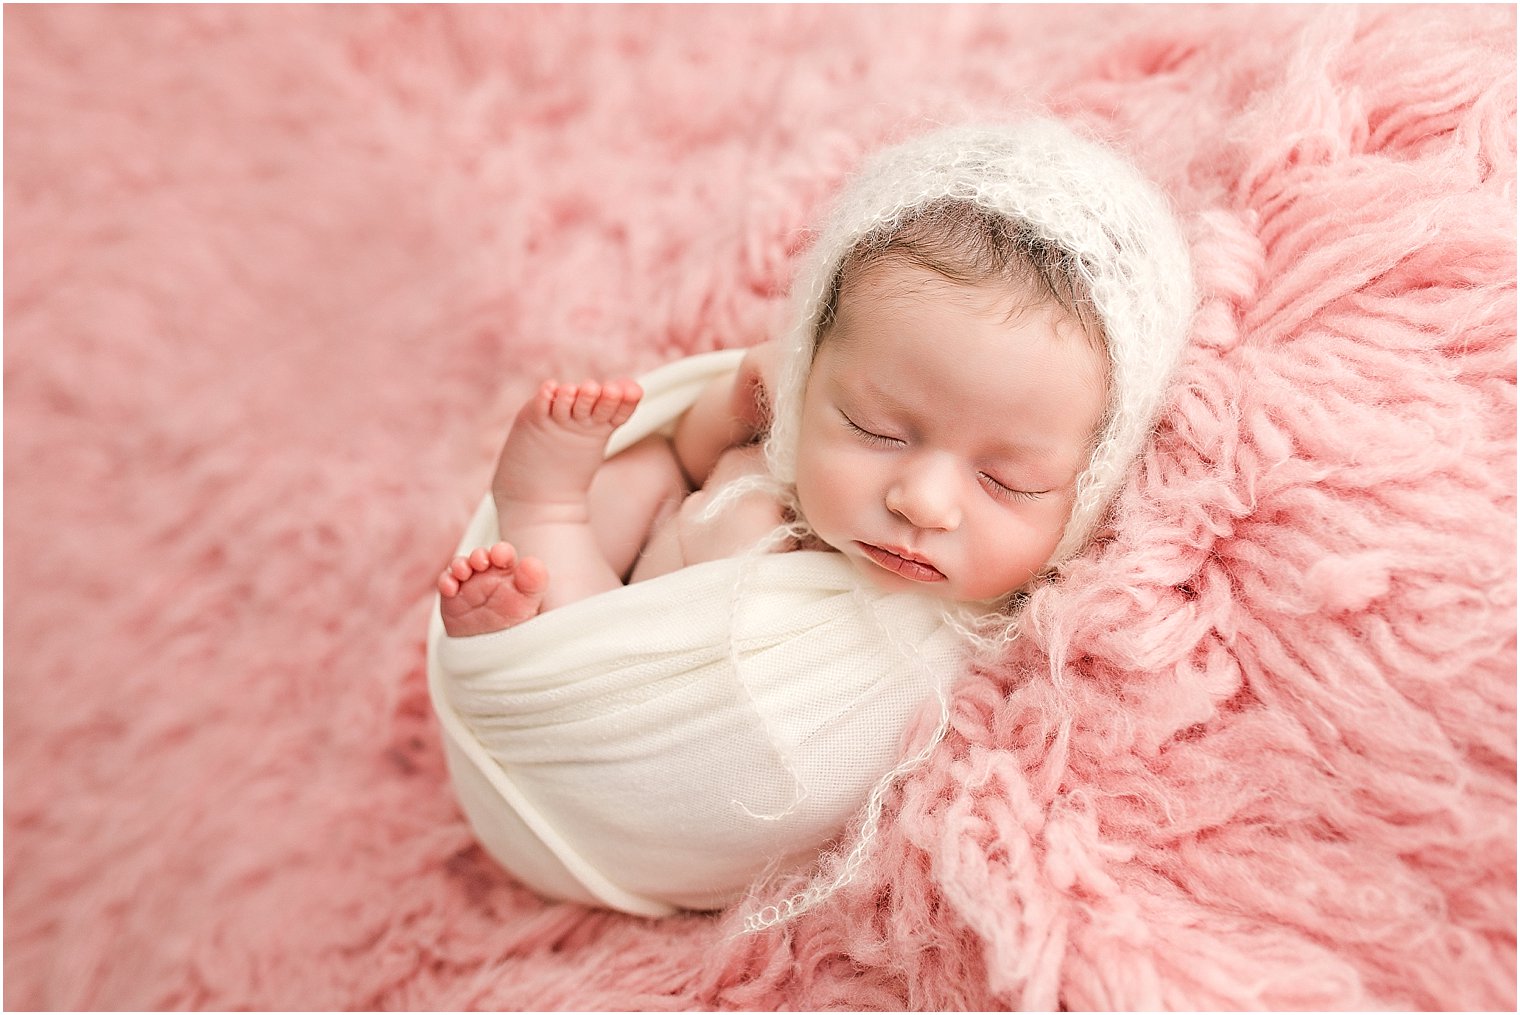 Newborn baby girl wearing a cream mohair bonnet